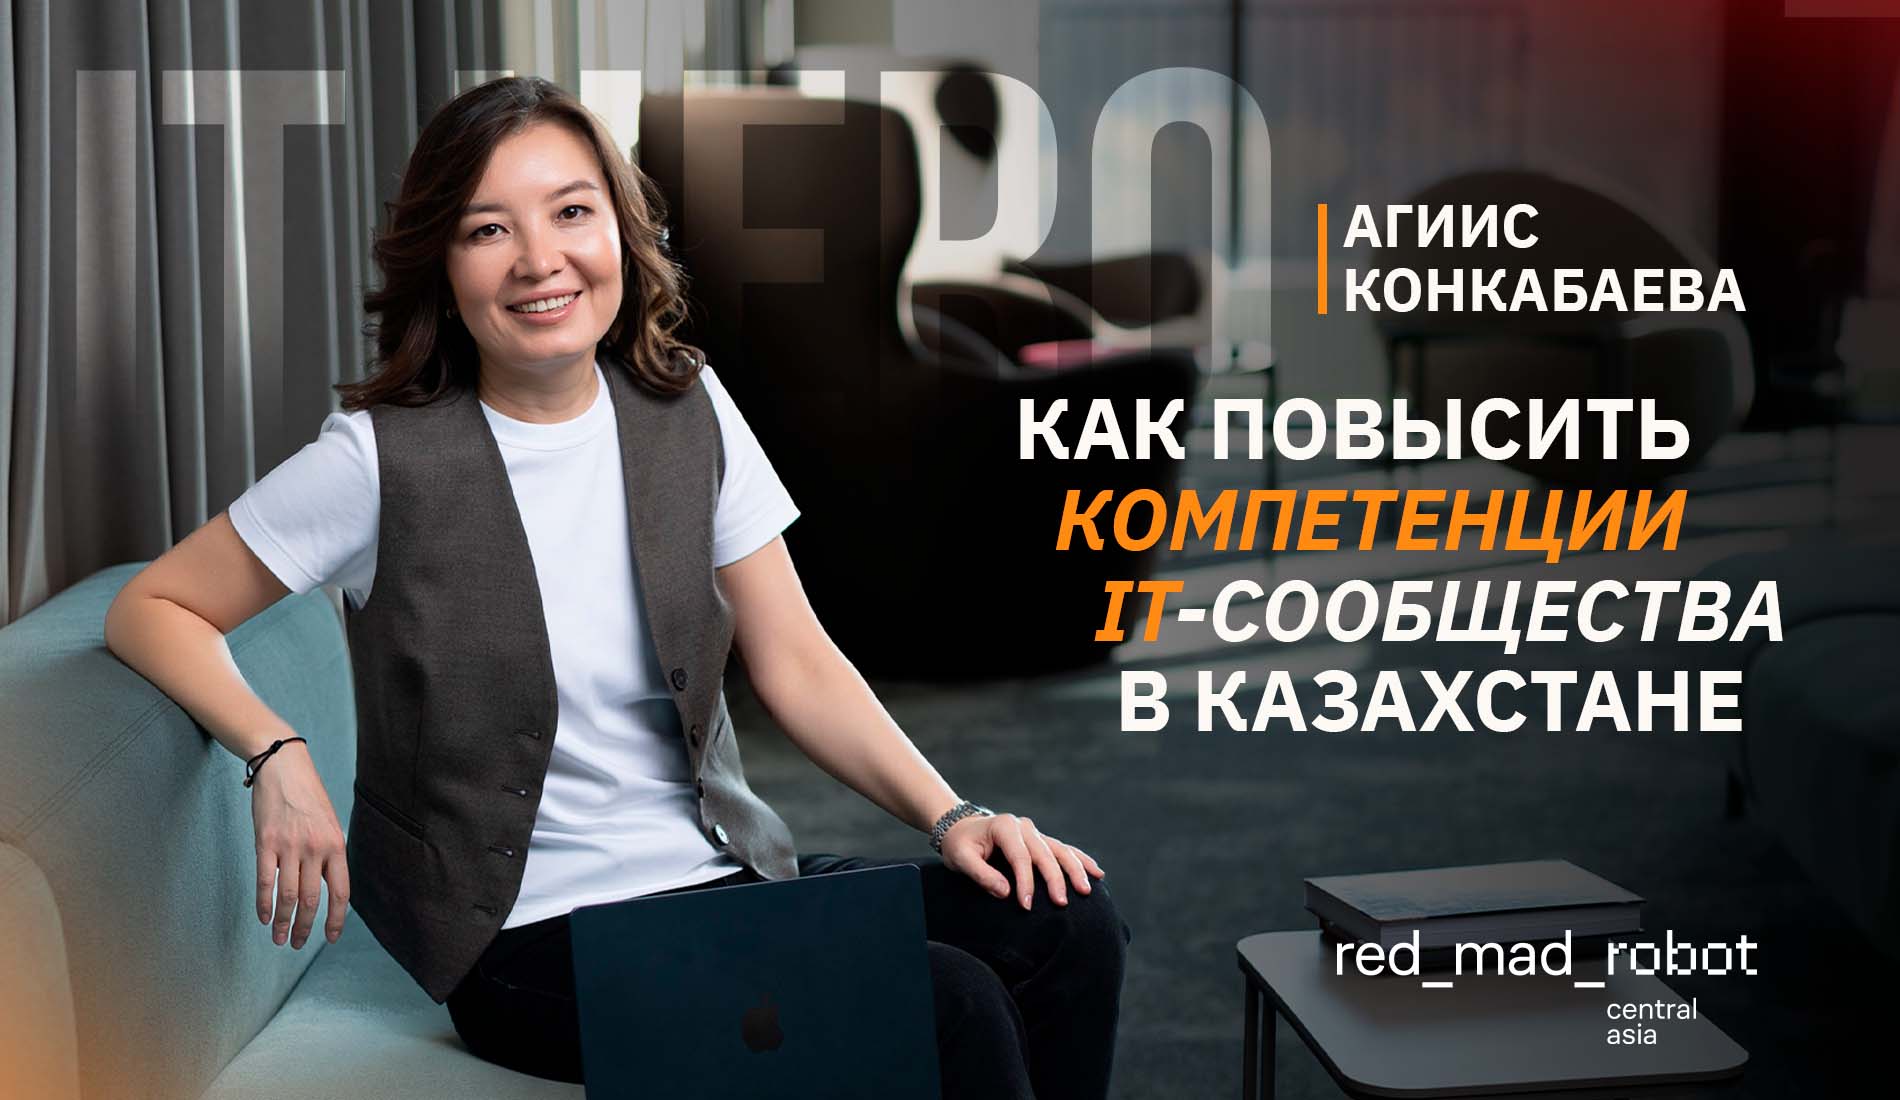 red_mad_robot Central Asia – как повысить компетенции IT-сообщества в Казахстане